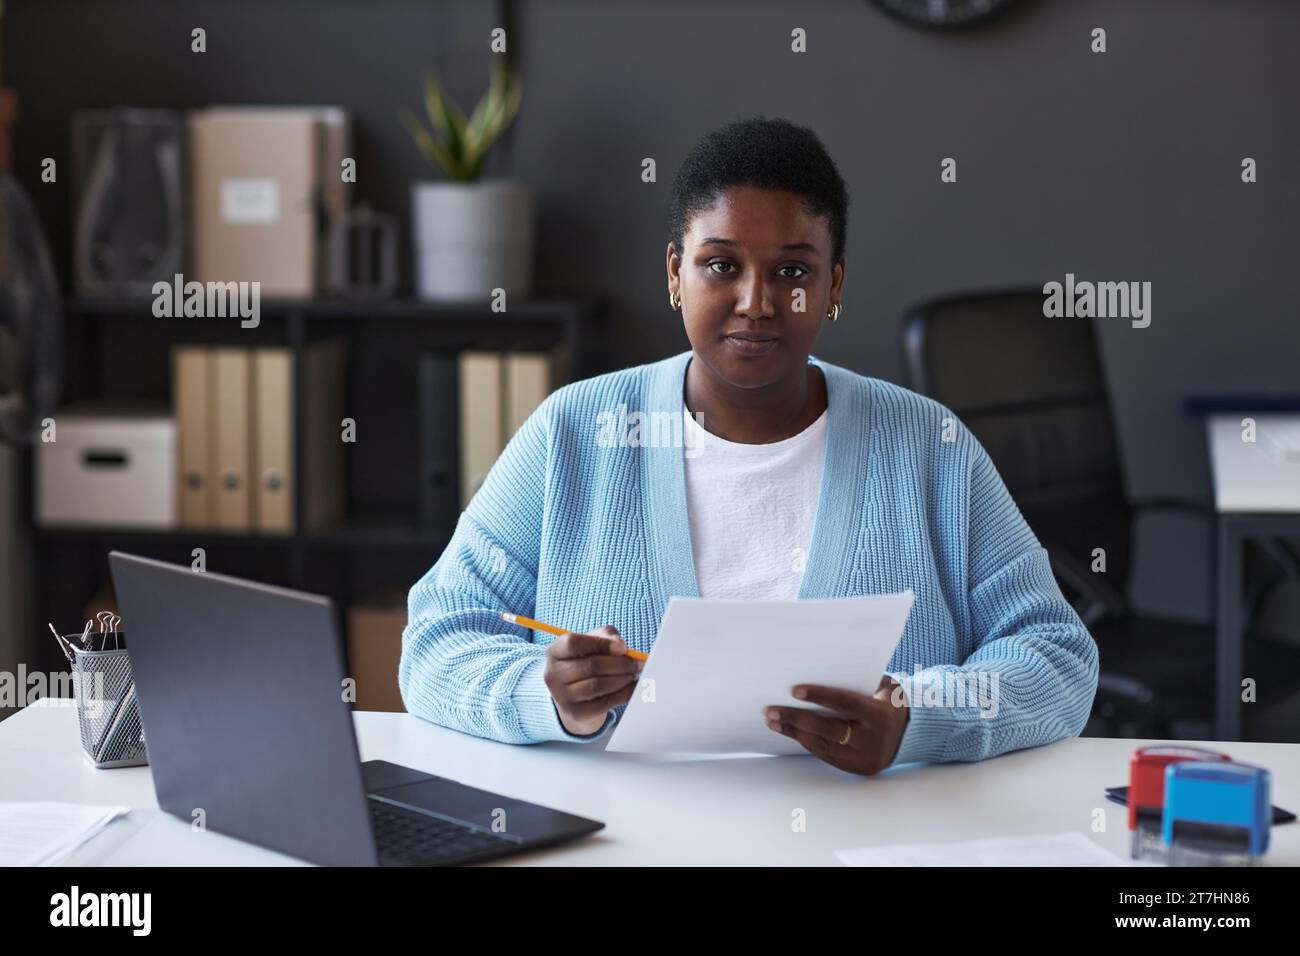 Junge, selbstbewusste Managerin des Visa-Antragszentrums in Casualwear, die auf die Kamera blickt, während sie am Arbeitsplatz sitzt und Daten überprüft Stockfoto